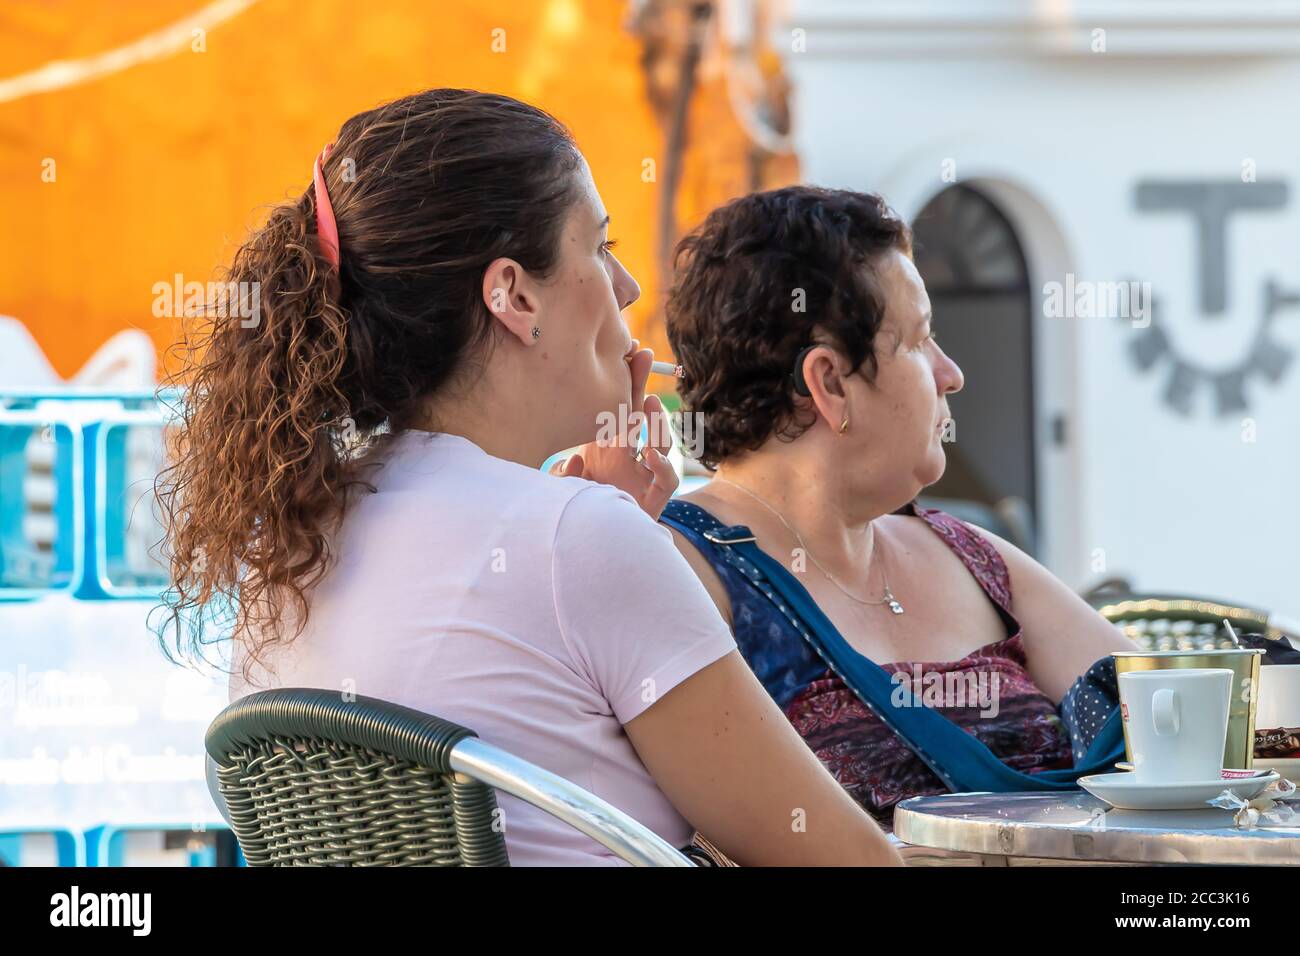 Huelva, Spanien - 17. August 2020: Frau raucht eine Zigarette auf einer Barterrasse Stockfoto